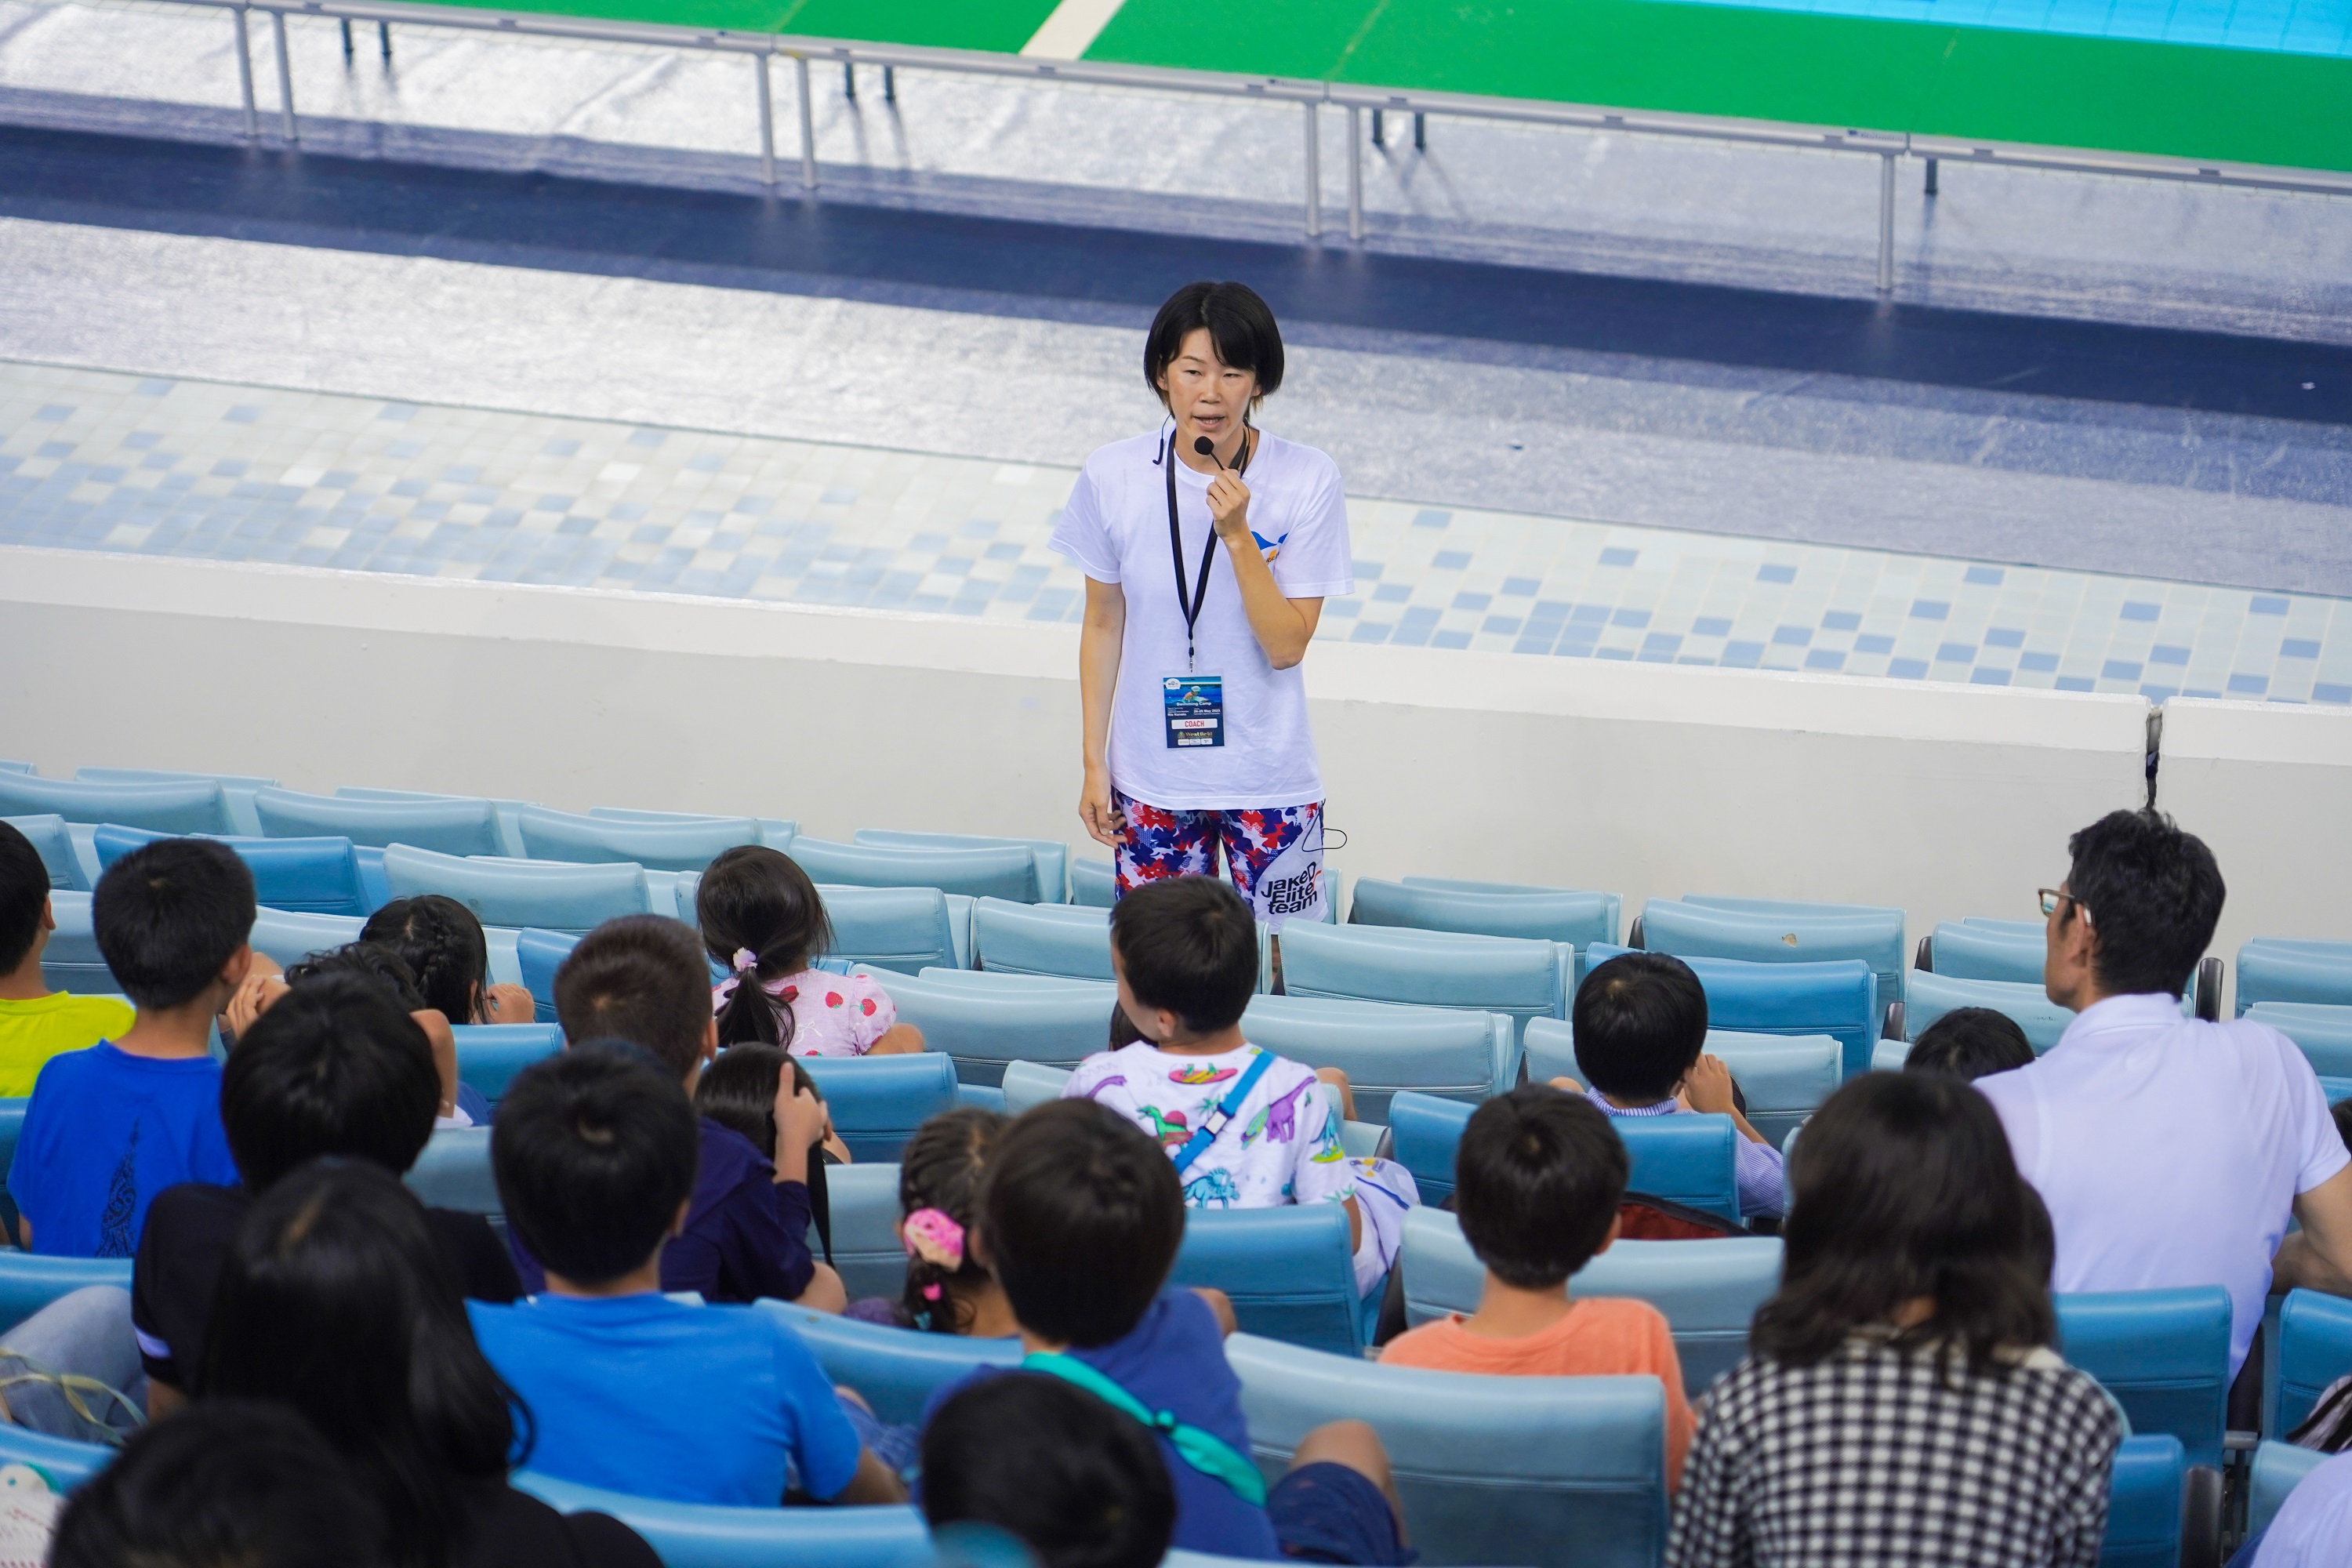 日本のレジェンド、レイ・カネトがドバイでオリンピック水泳チャンピオンを育成するための実りあるプログラムを立ち上げた